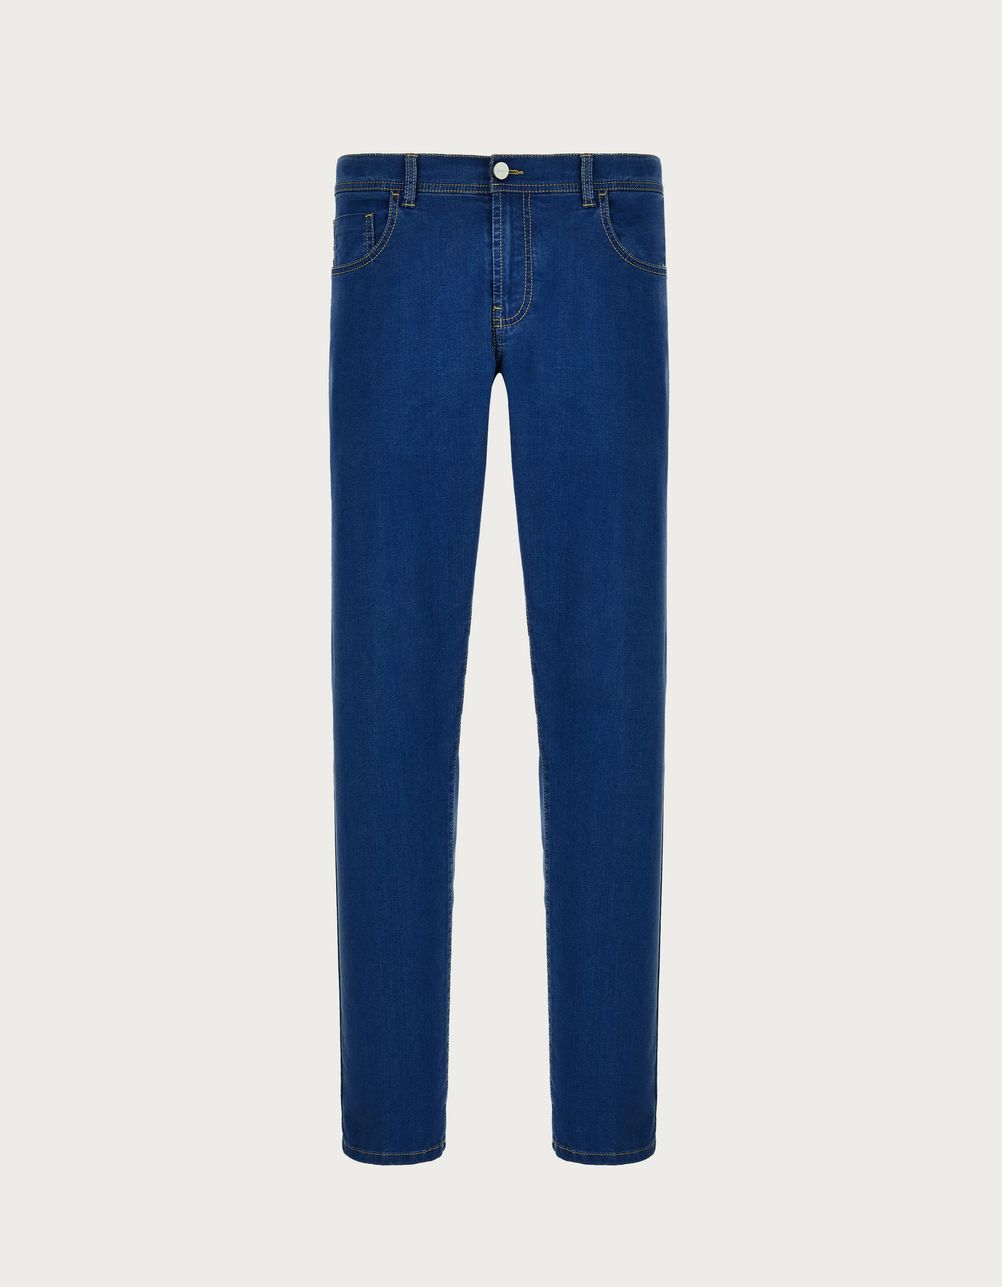 Five-pocket soft-touch blue denim pants